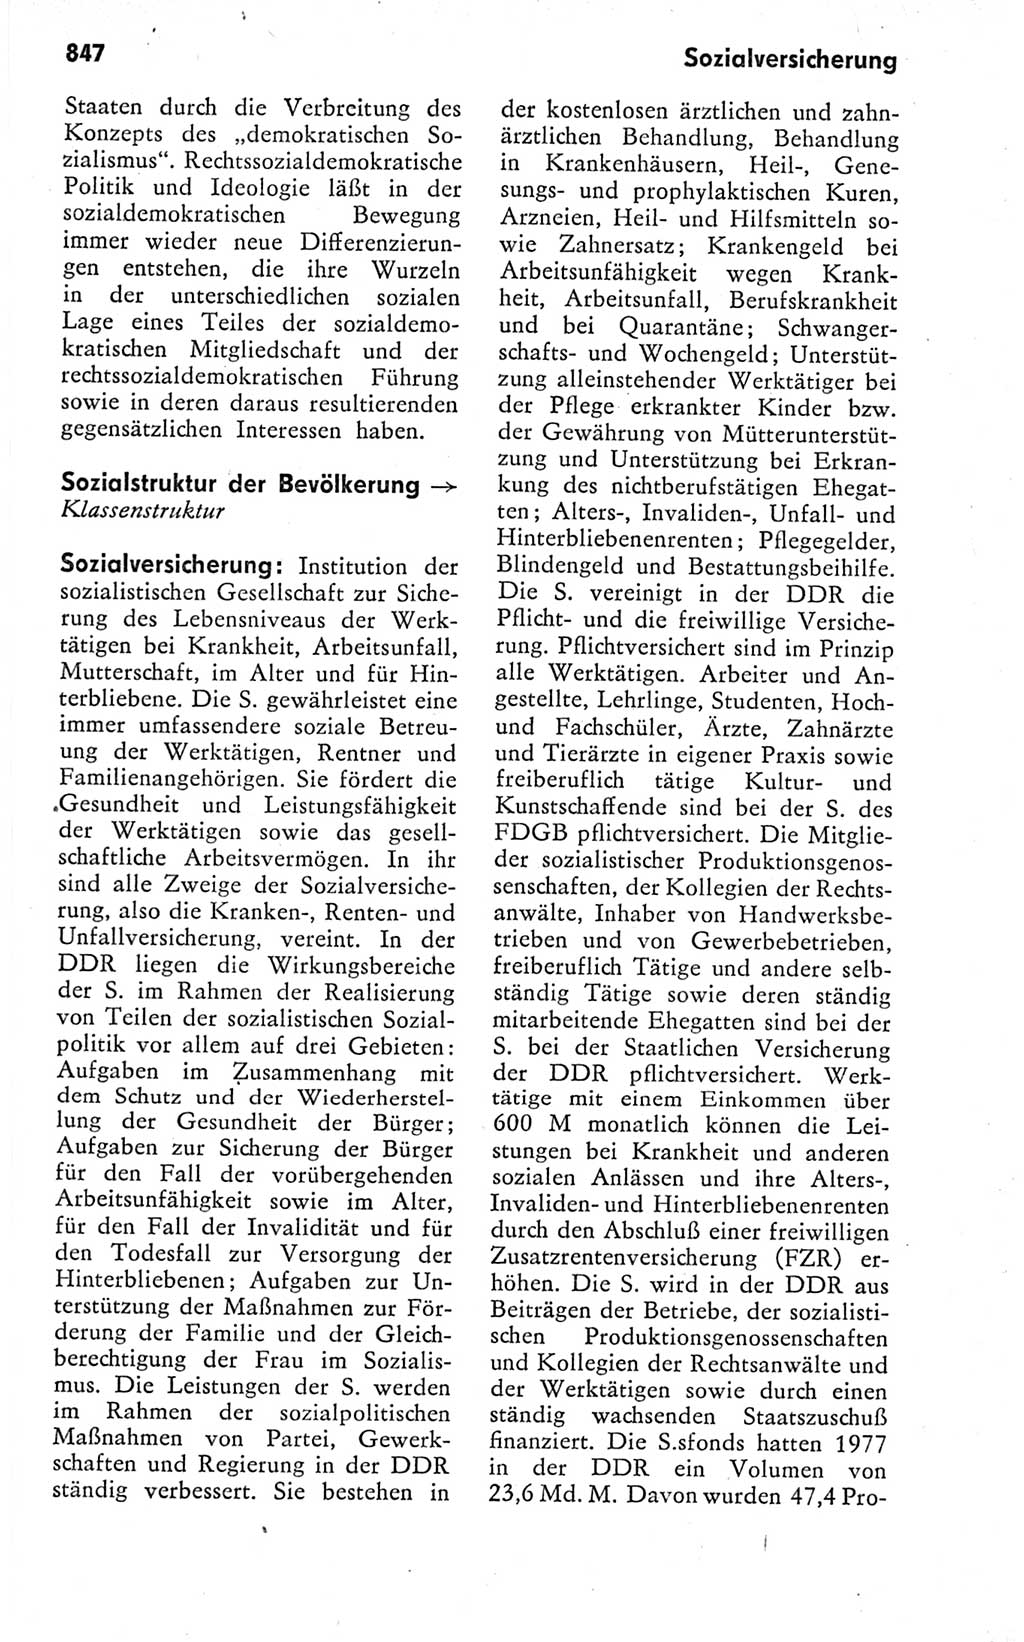 Kleines politisches Wörterbuch [Deutsche Demokratische Republik (DDR)] 1978, Seite 847 (Kl. pol. Wb. DDR 1978, S. 847)